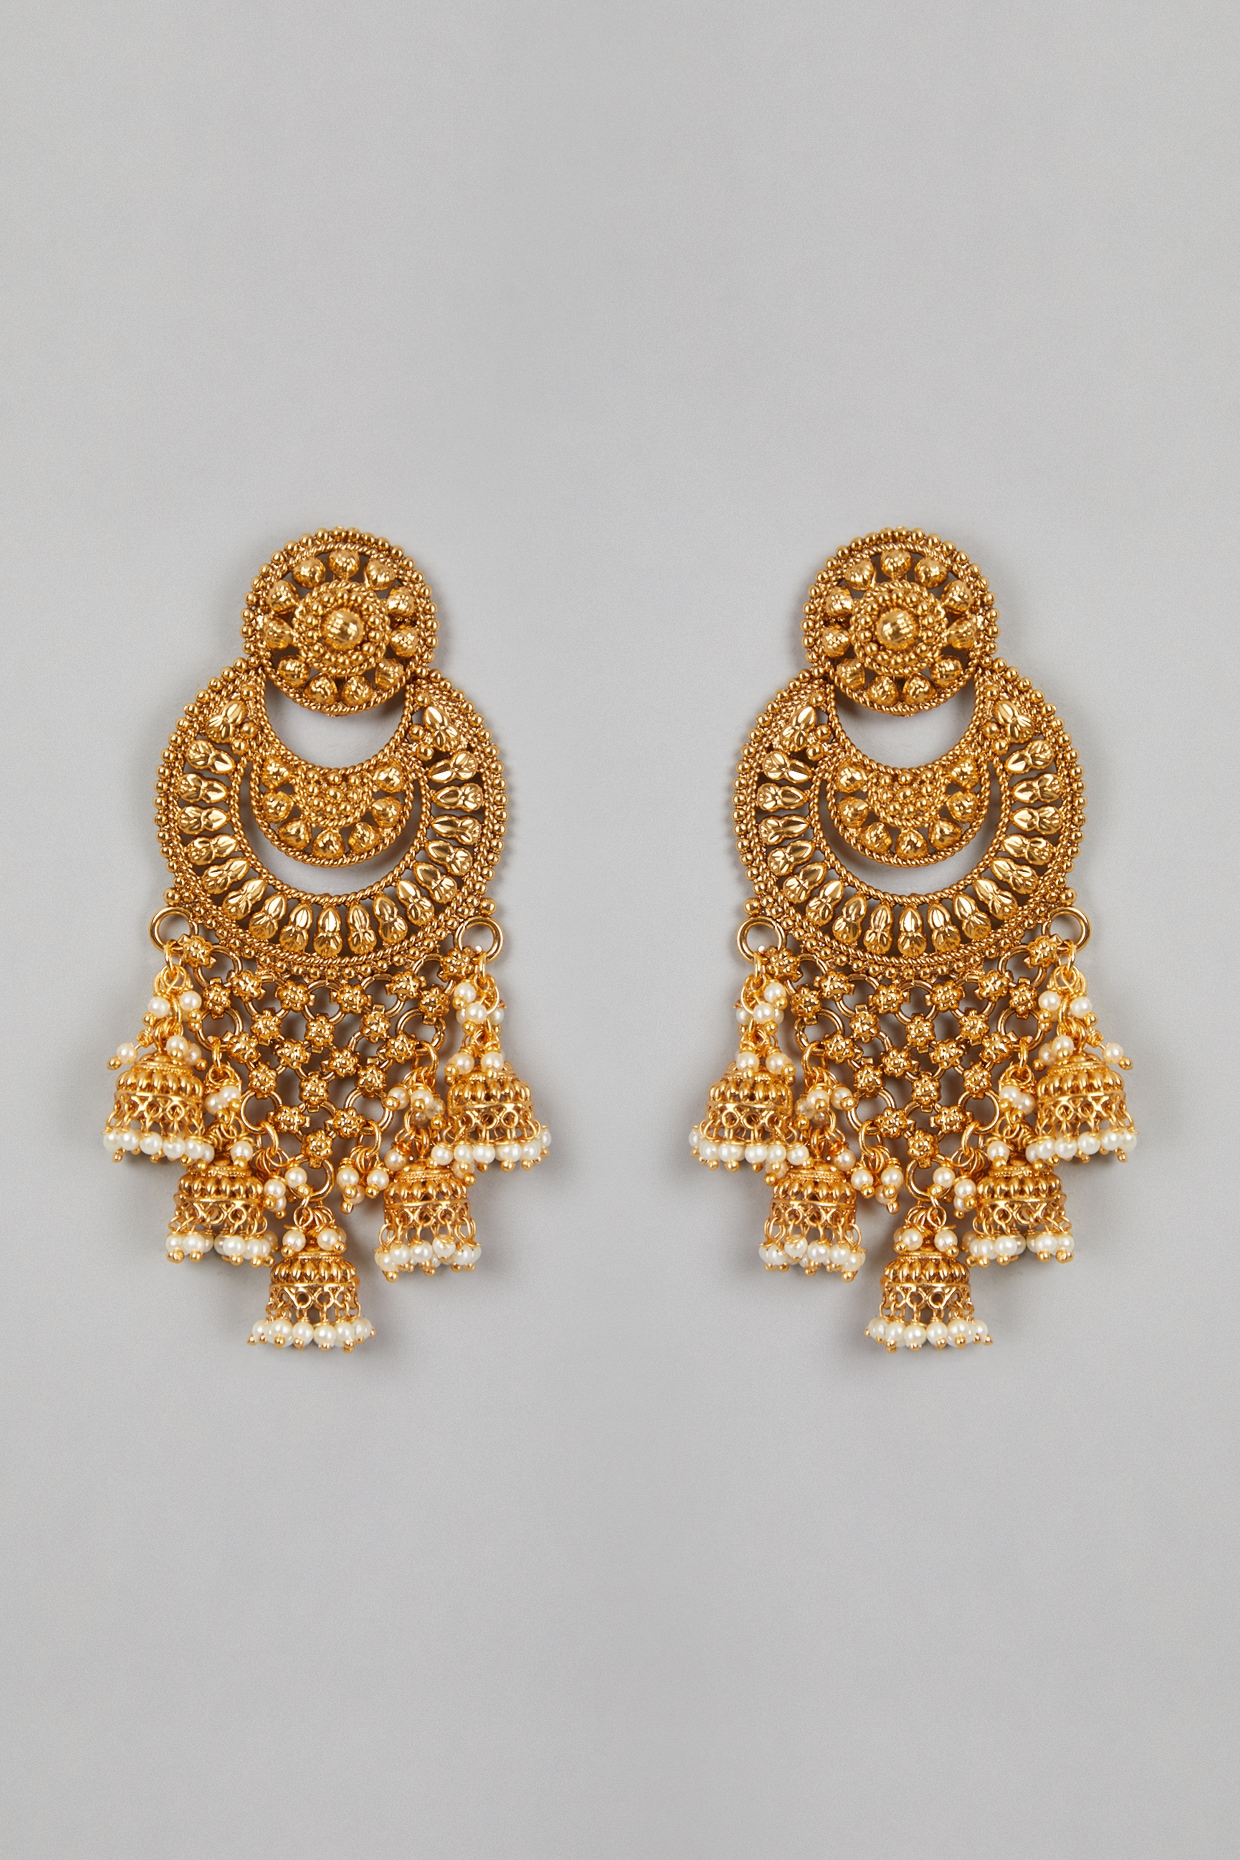 Long Golden Earrings Studs earringsearrings jewelryearrings long kaan ke  bunde chain gold tops jhumki 